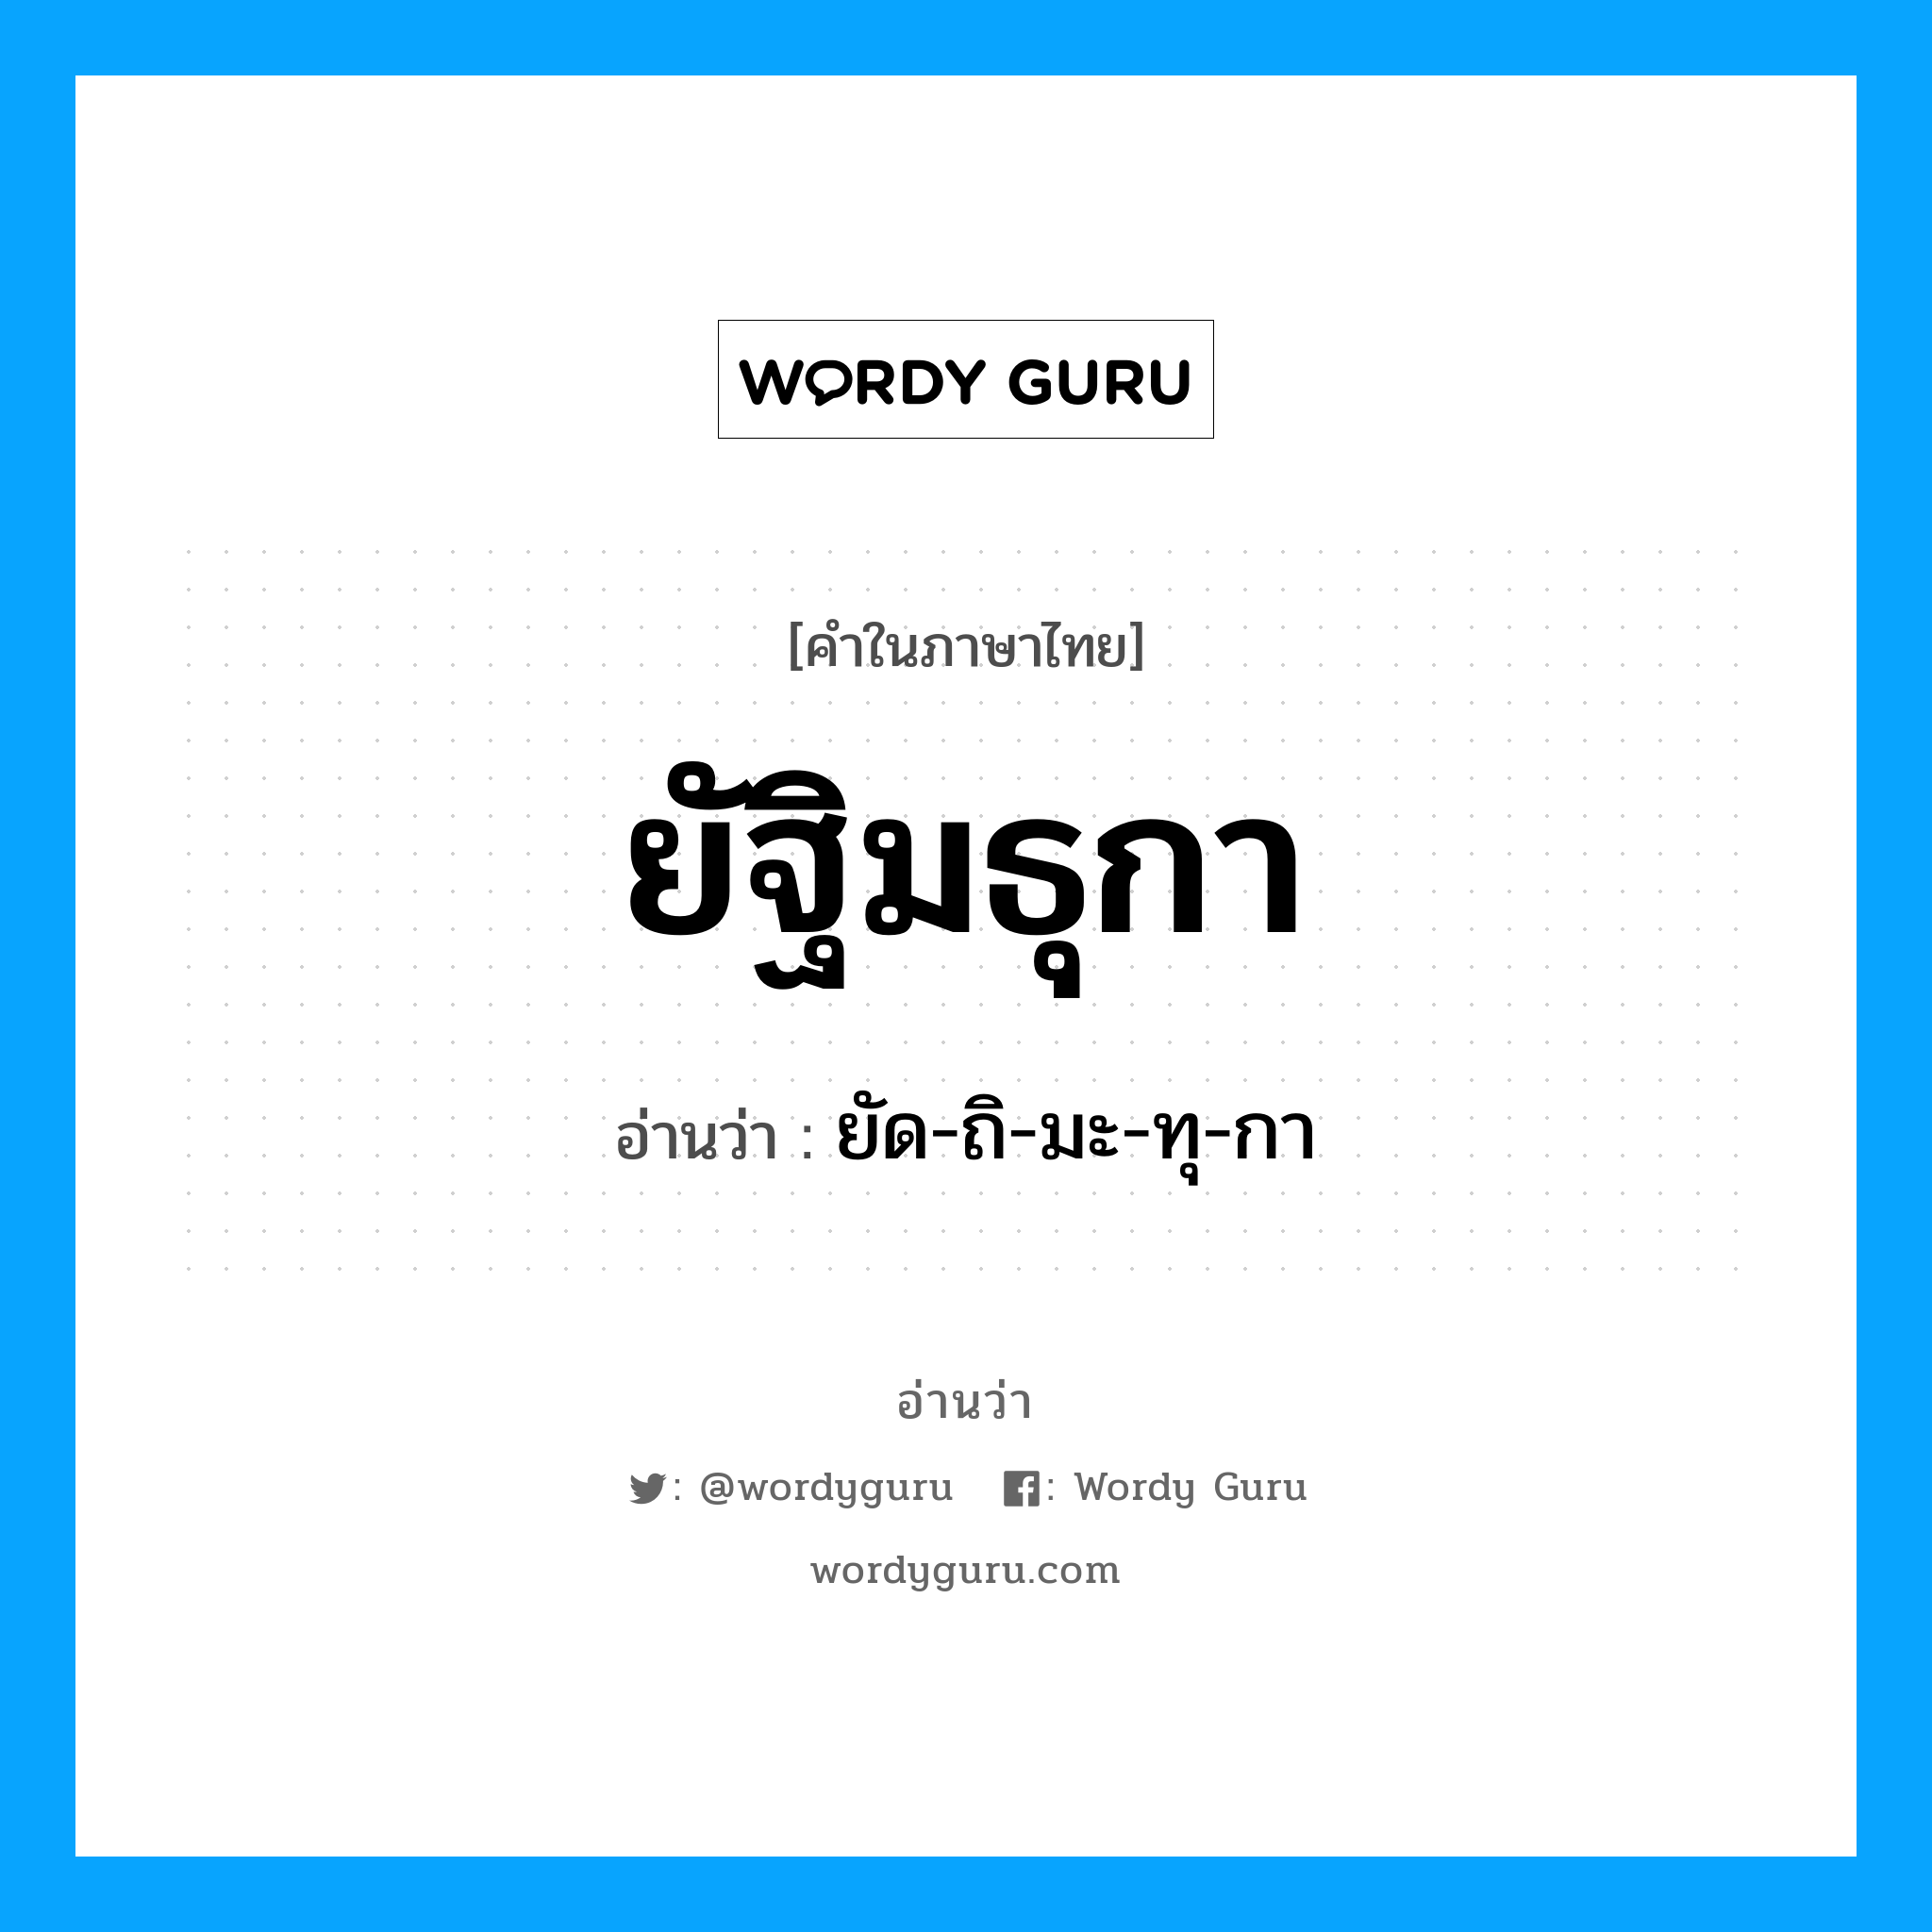 ยัด-ถิ-มะ-ทุ-กา เป็นคำอ่านของคำไหน?, คำในภาษาไทย ยัด-ถิ-มะ-ทุ-กา อ่านว่า ยัฐิมธุกา